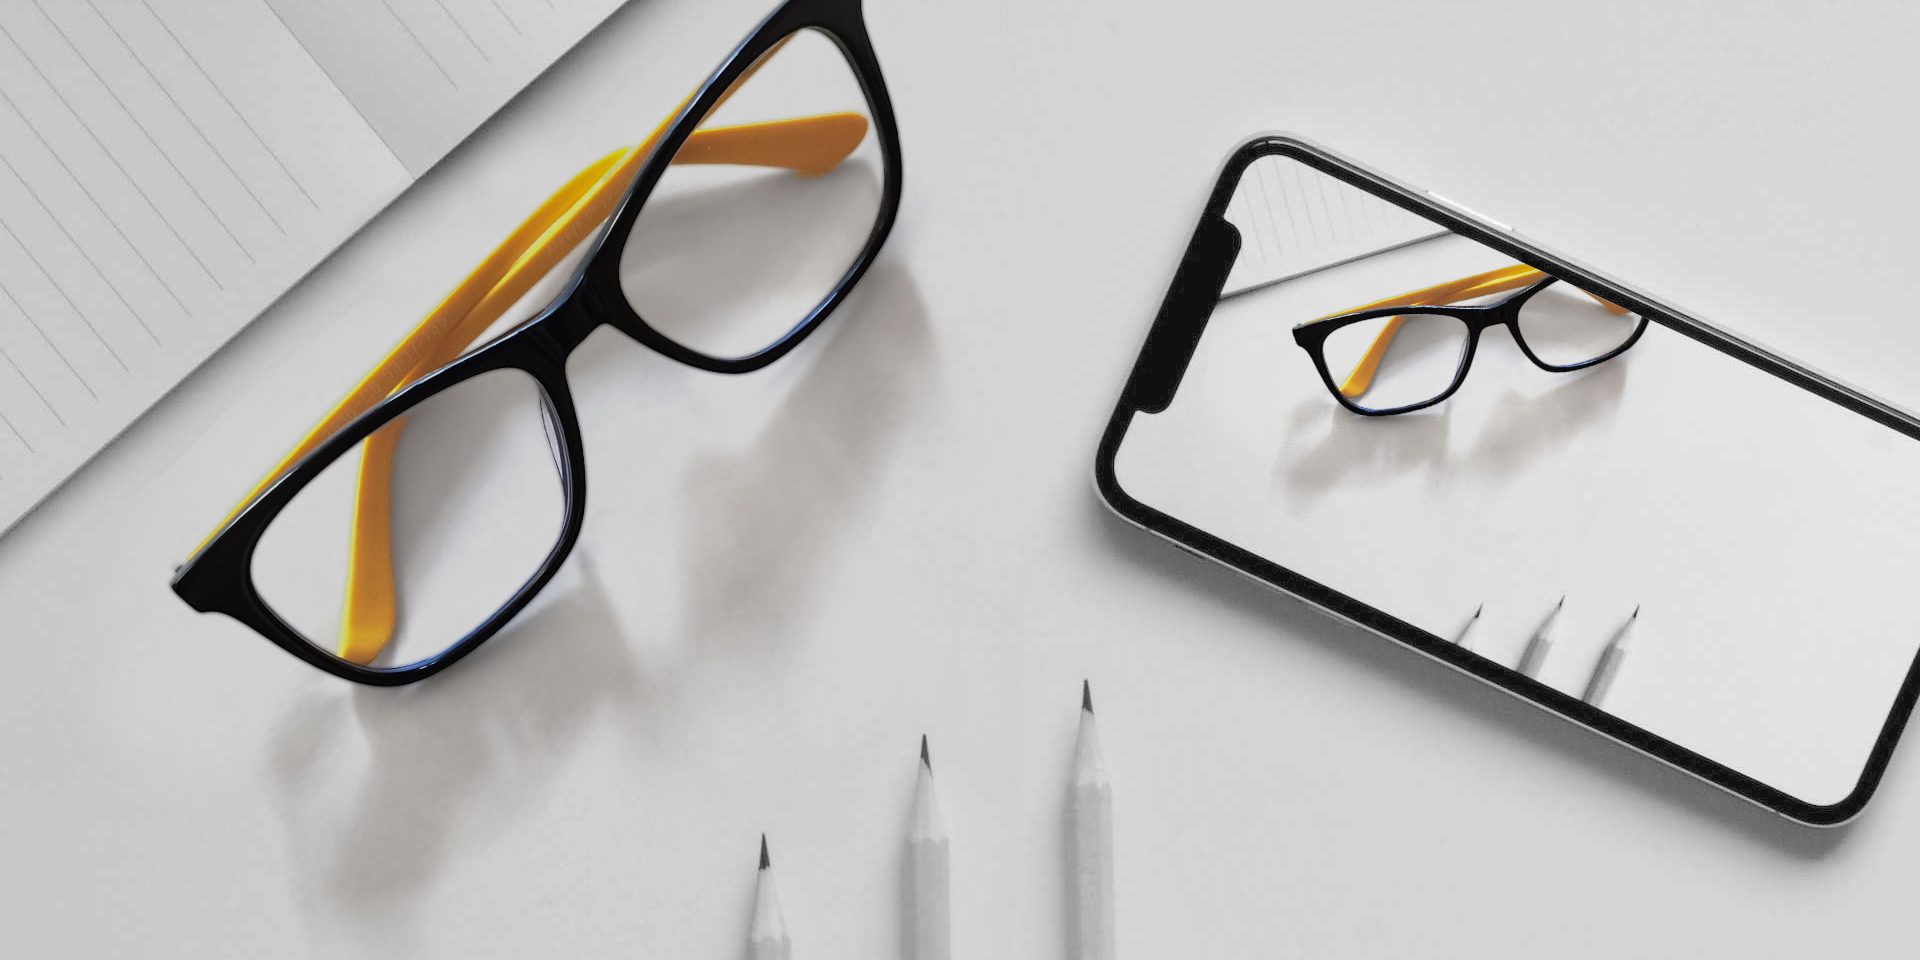 Schreibtisch mit Bleistifen, Brille und Smartphone